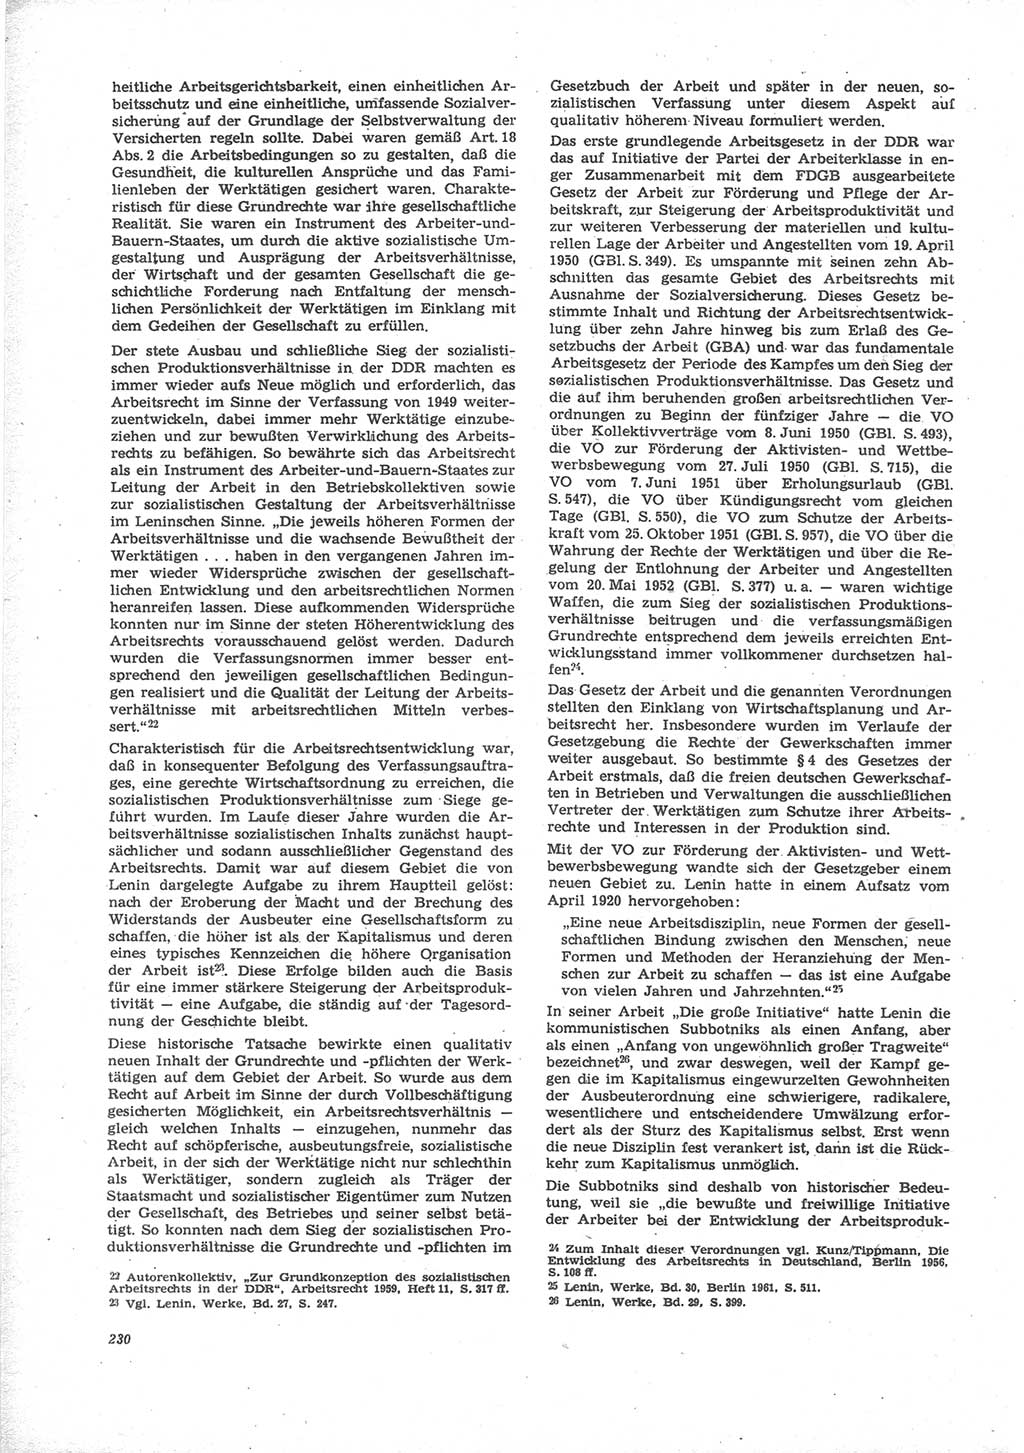 Neue Justiz (NJ), Zeitschrift für Recht und Rechtswissenschaft [Deutsche Demokratische Republik (DDR)], 24. Jahrgang 1970, Seite 230 (NJ DDR 1970, S. 230)